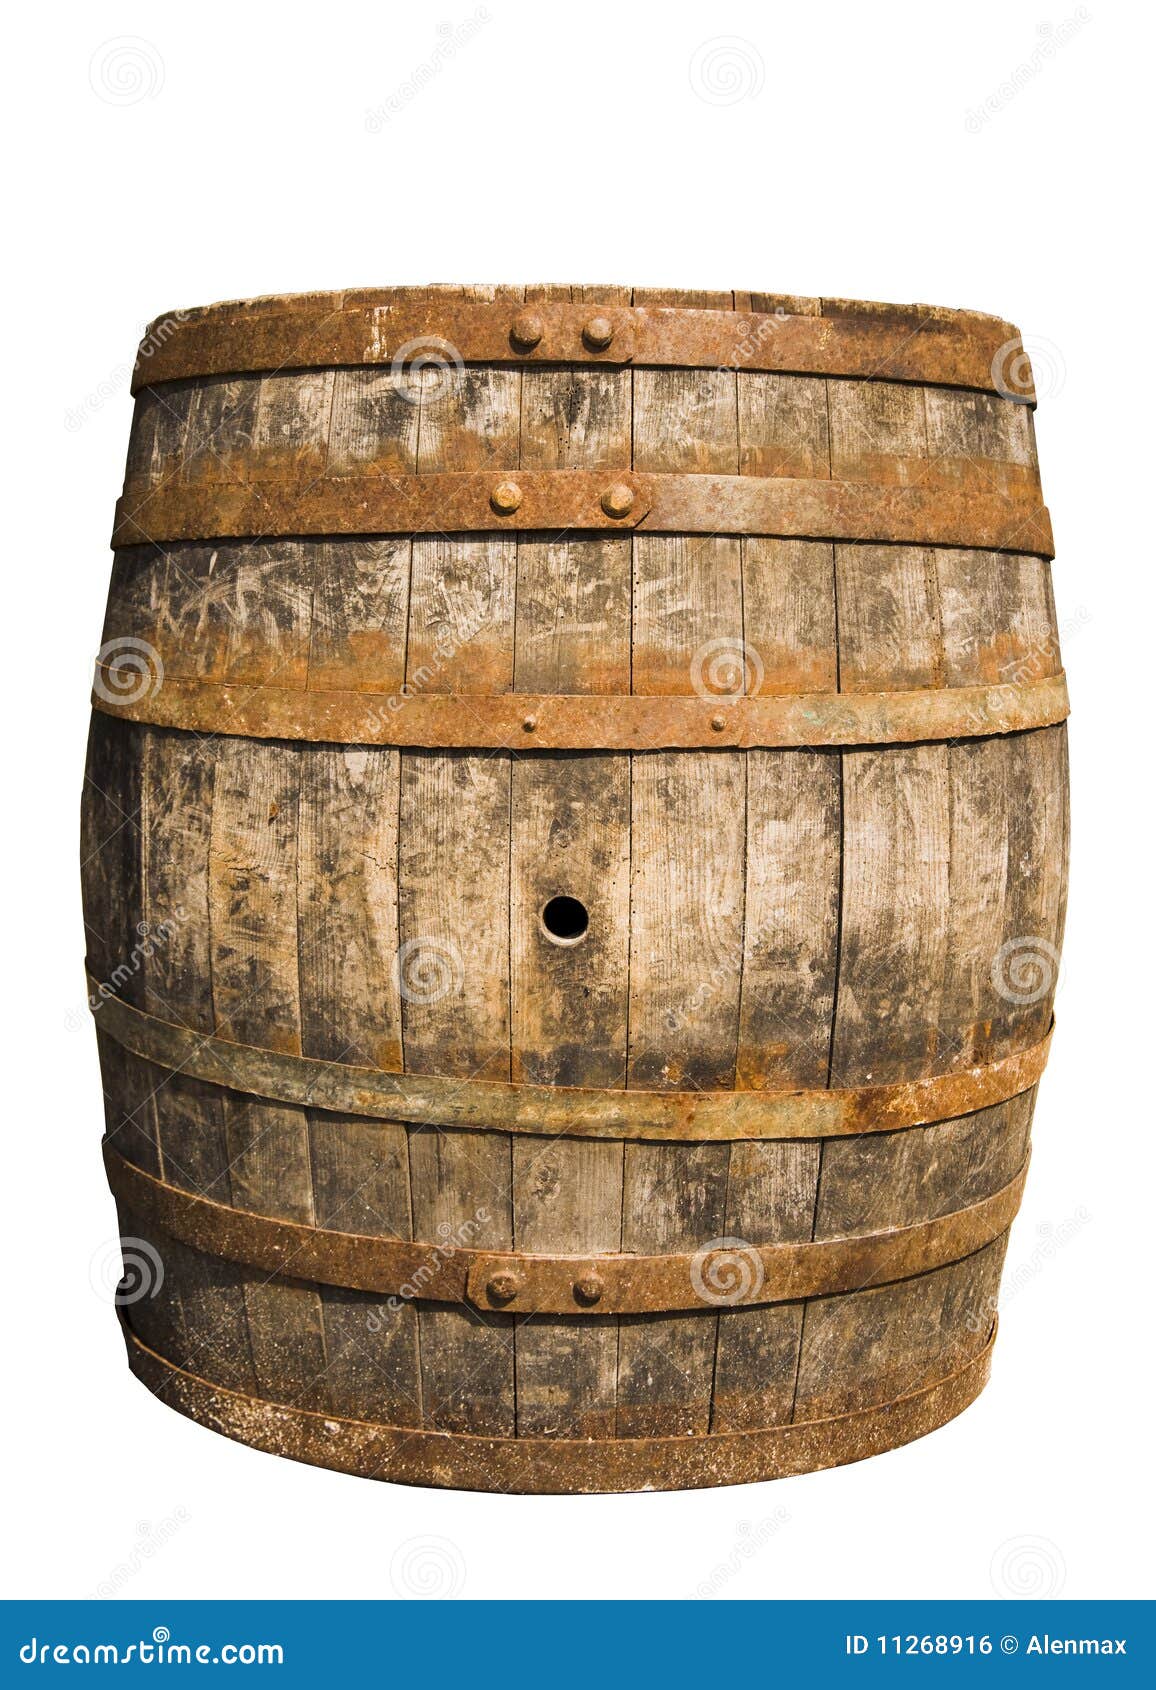 El barril de madera foto de archivo. Imagen de alcohol - 11268916